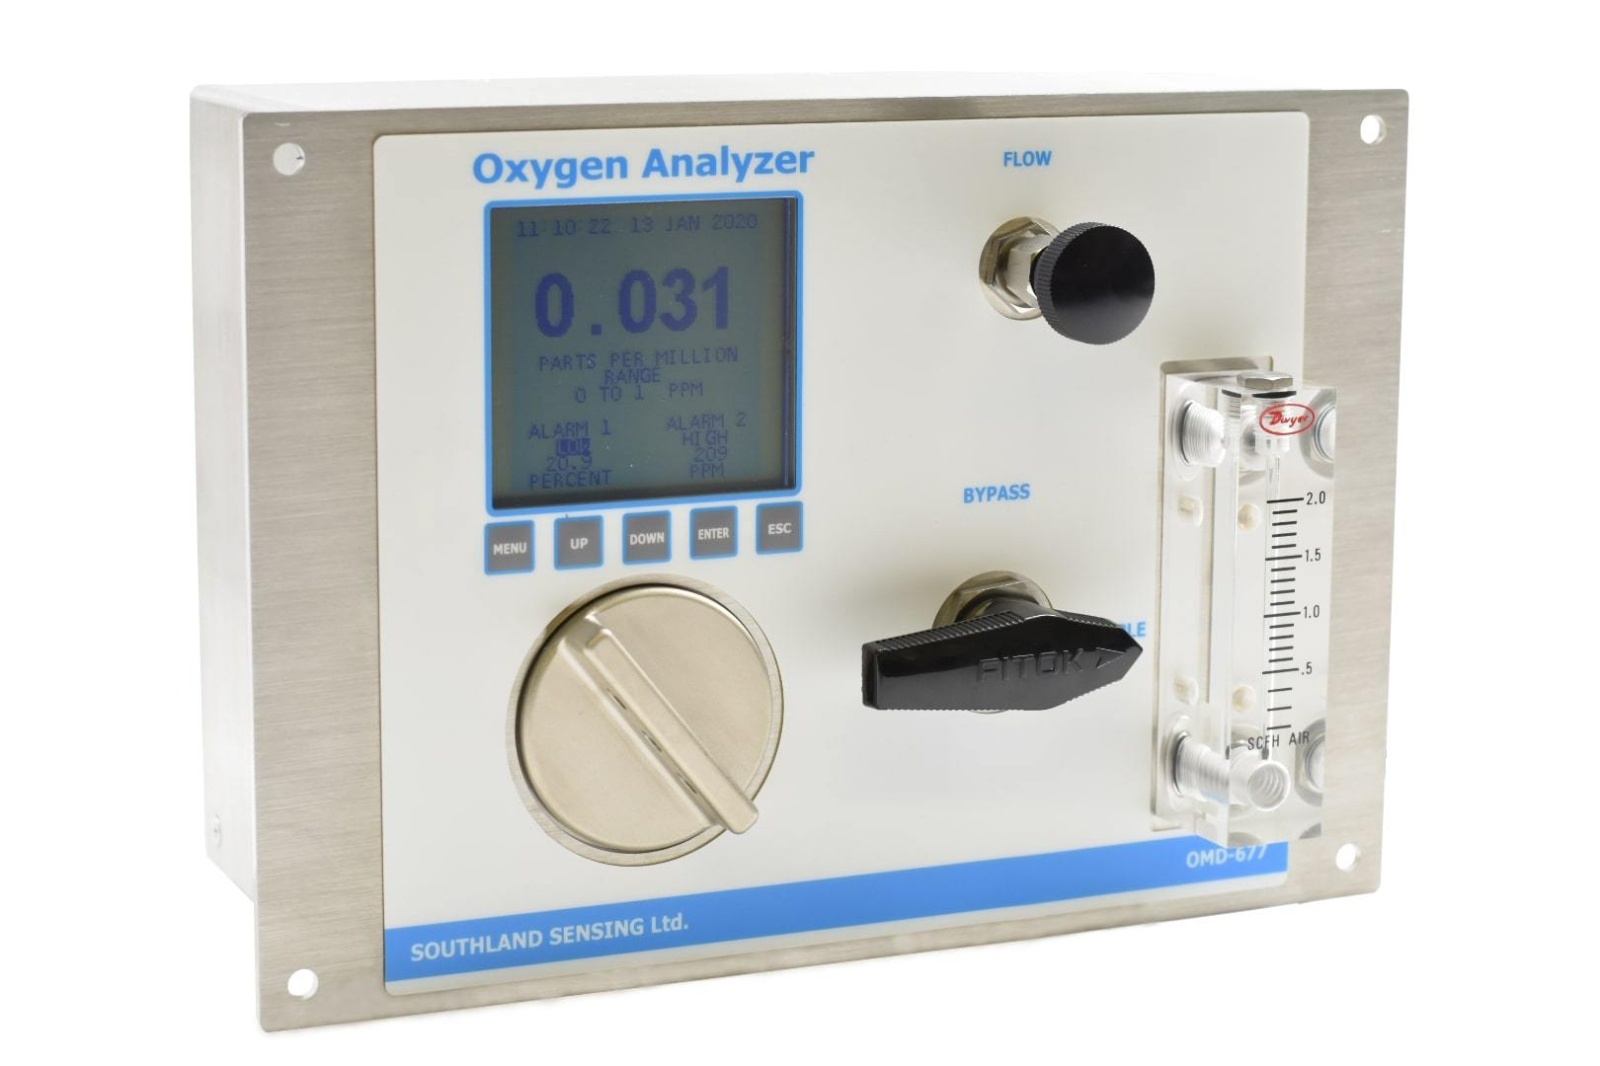 镶嵌式氧气分析仪OMD-677-1